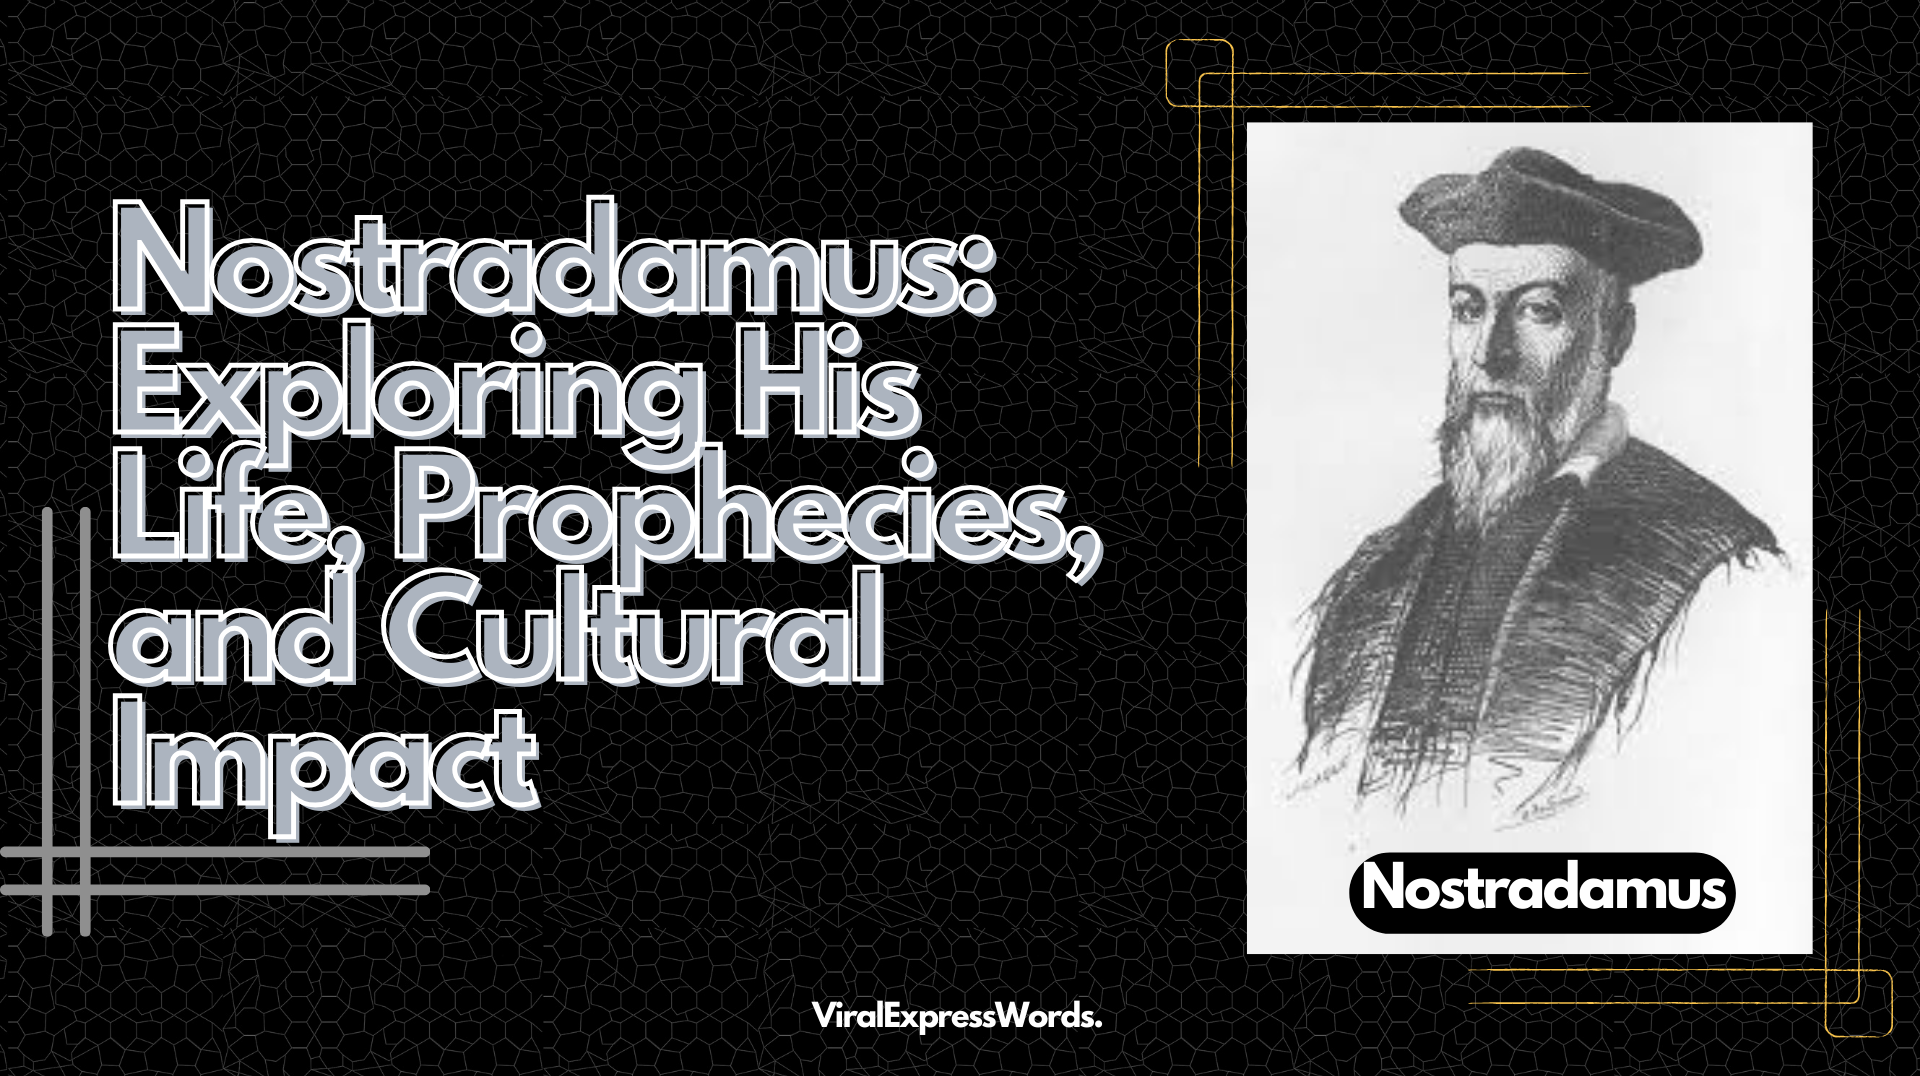 Nostradamus: Exploring His Life, Prophecies, and Cultural Impact